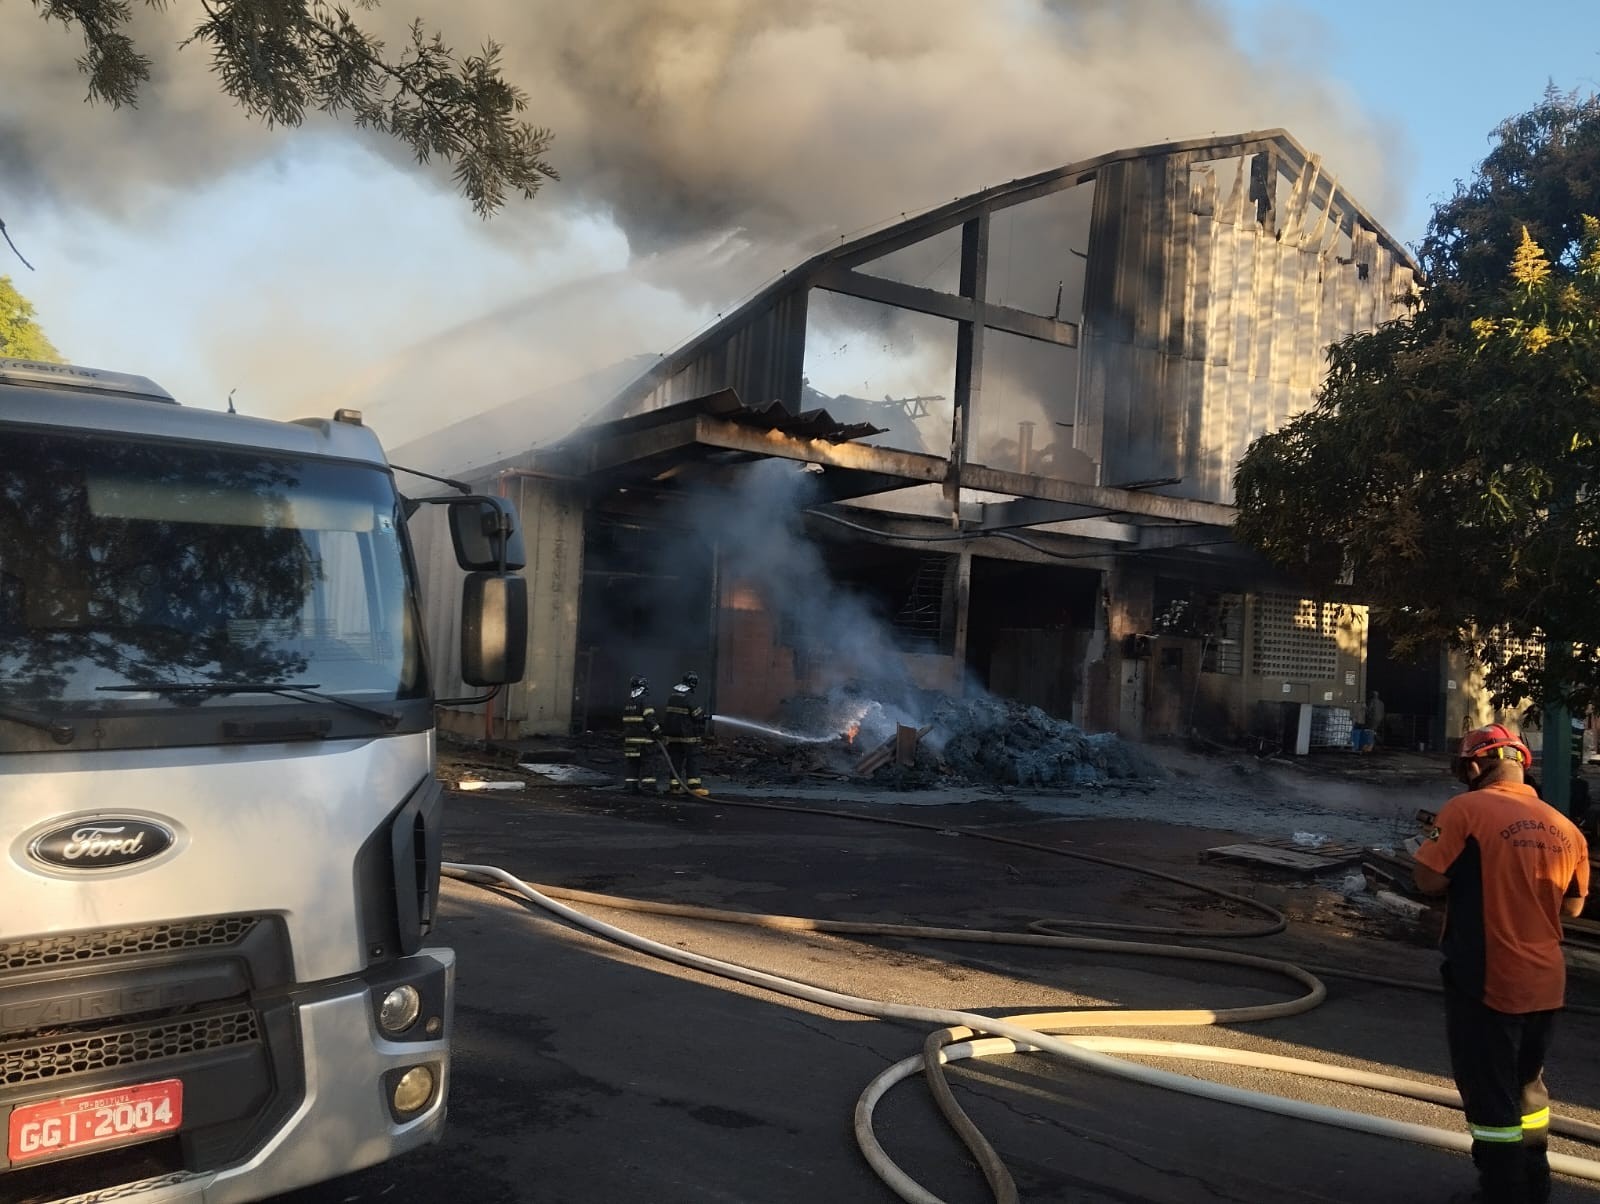 Empresa de ração que pegou fogo em Boituva diz que perdeu grande parte de documentos fiscais e contábeis